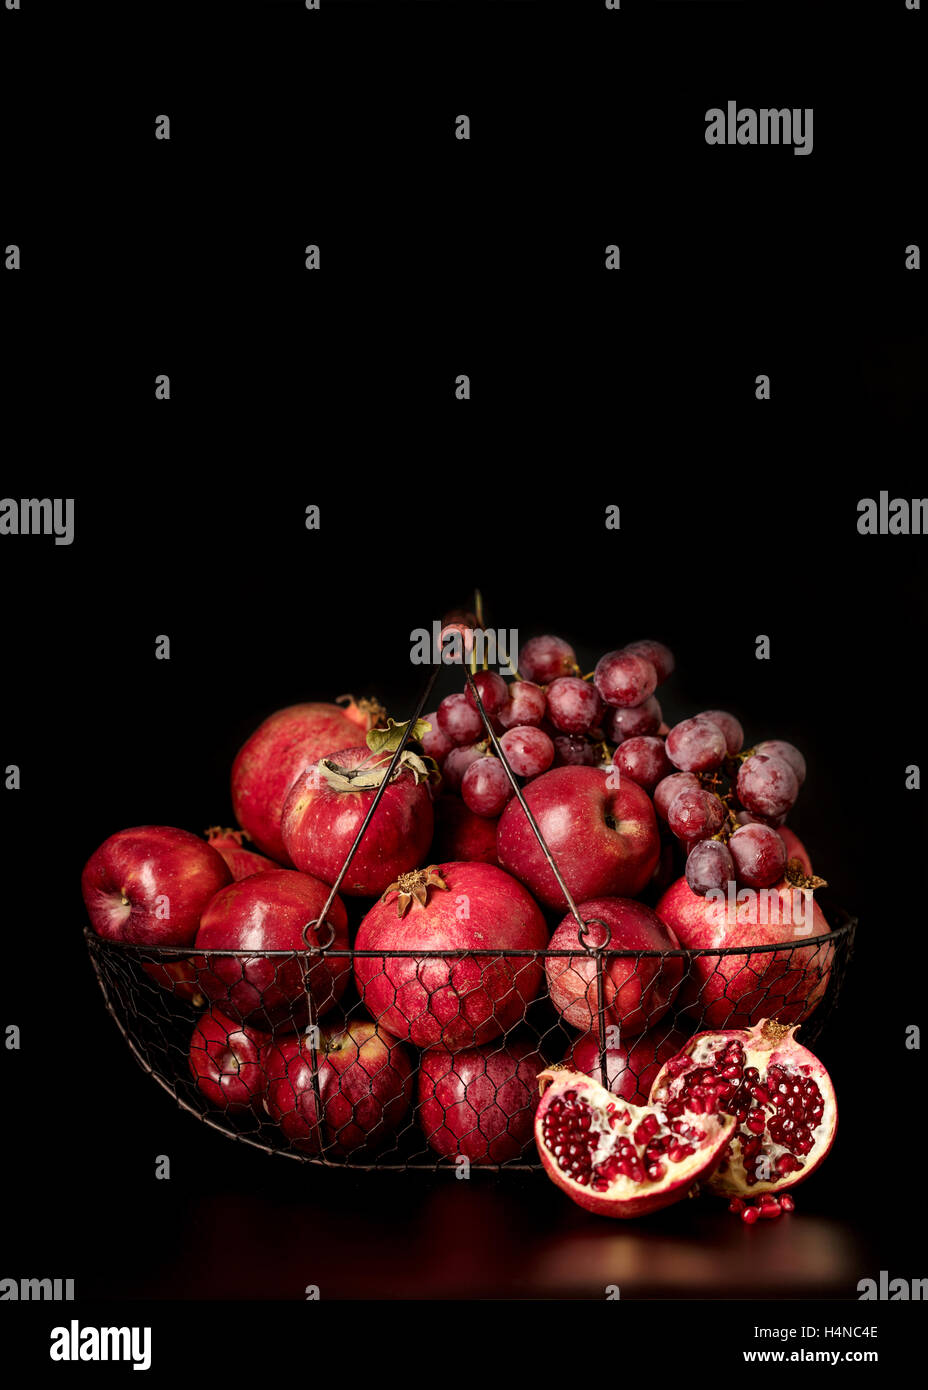 Still-Leben auf einem dunklen Hintergrund. Früchte und Beeren (Äpfel, Granatäpfel und Trauben) in den Korb. Stockfoto